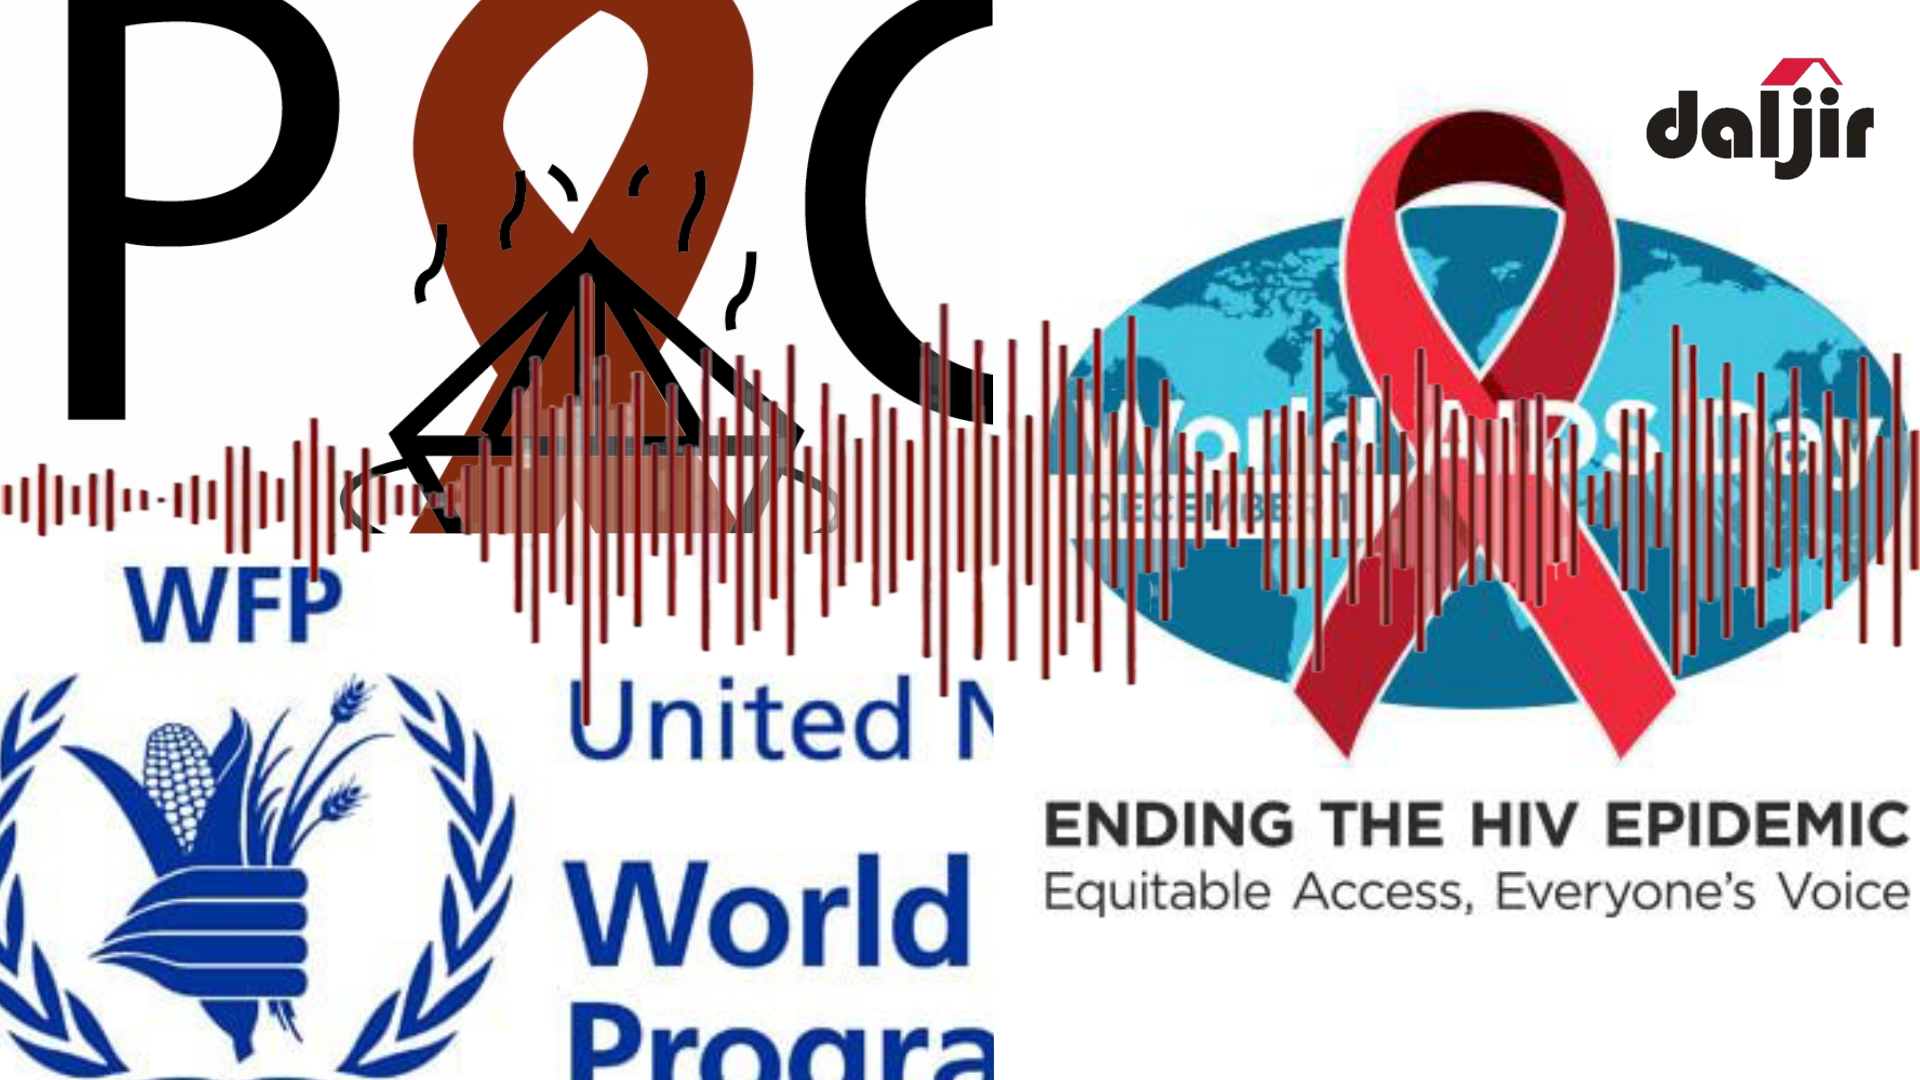 FARIINTA HIV: PAC oo gacan ka heleysa WFP ayaa idiin soo gudbinaysa (daawo)